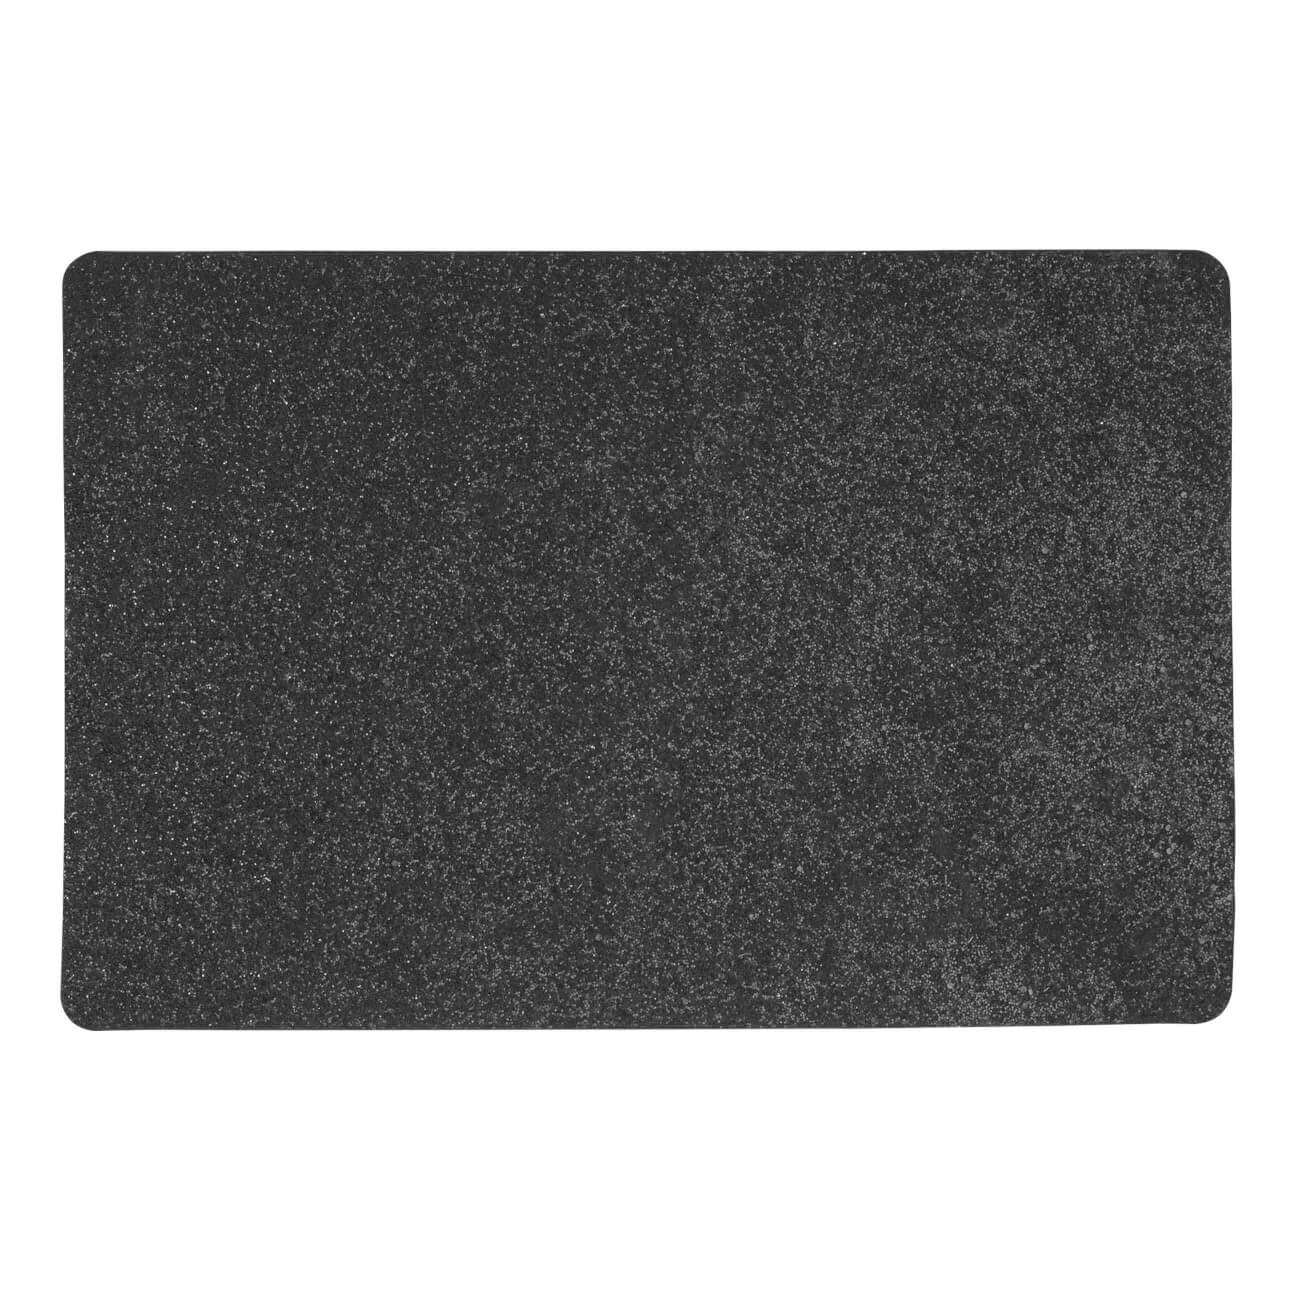 Салфетка под приборы, 30х45 см, ПВХ, прямоугольная, черная, Rock изображение № 1